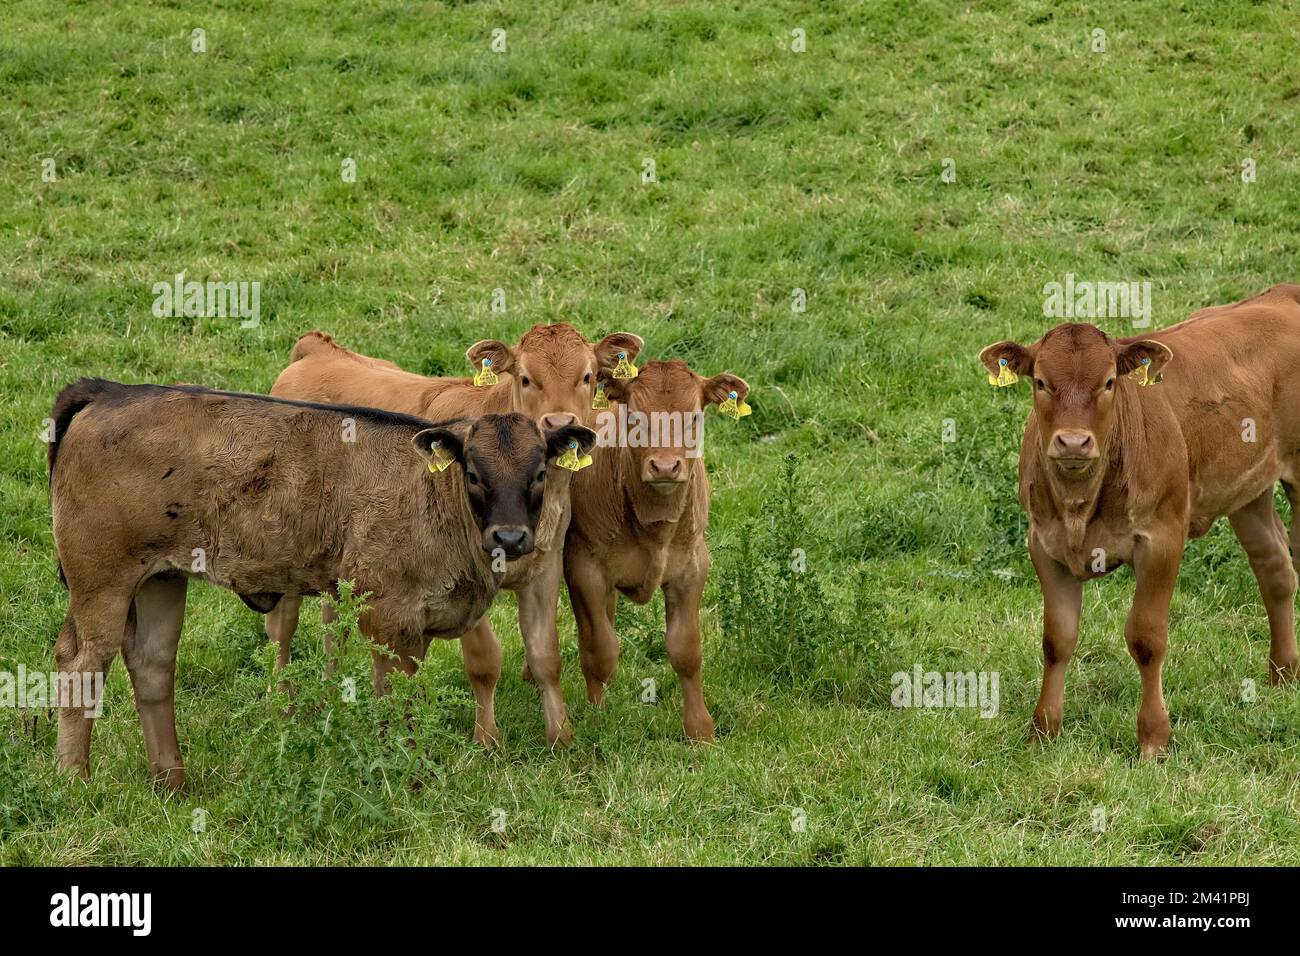 Eine Herde neugieriger Kälber aus braunem Rindfleisch steht auf einem grasbedeckten Bauernfeld in Nidderdale, North Yorkshire, mit gelben Ohrmarken. Stockfoto